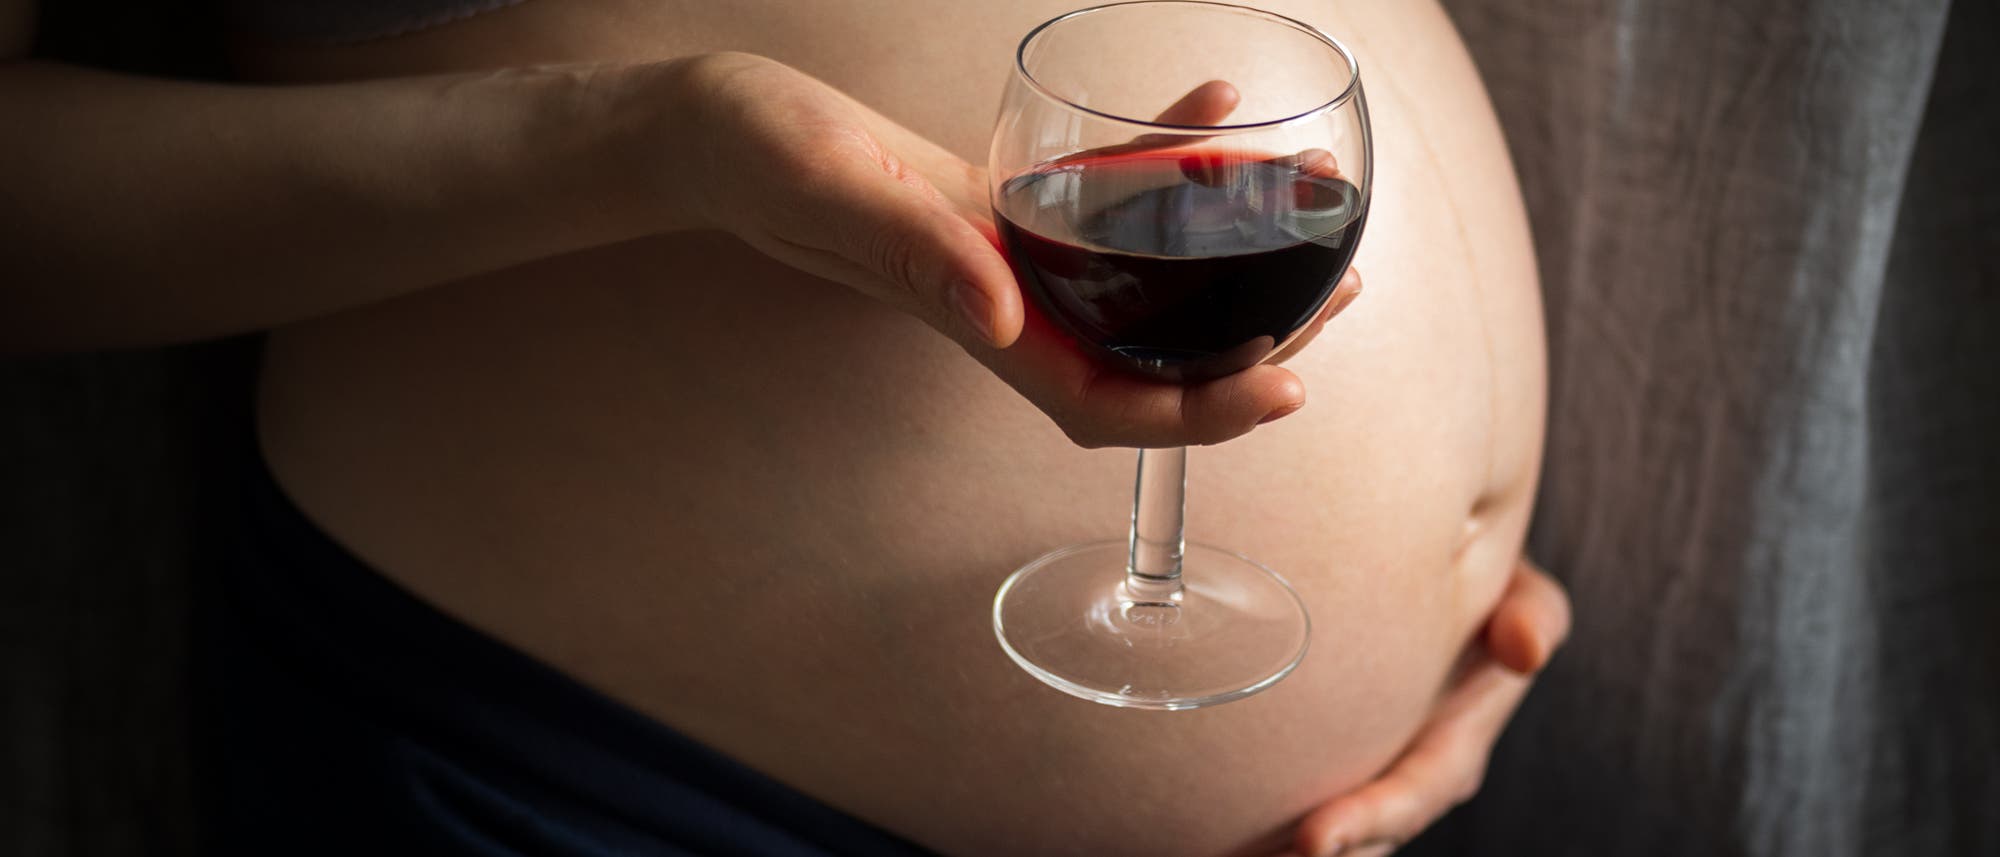 Die Körpermitte einer Schwangeren, von der Seite fotografiert, mit einem Weinglas in der Hand mittig im Bild.